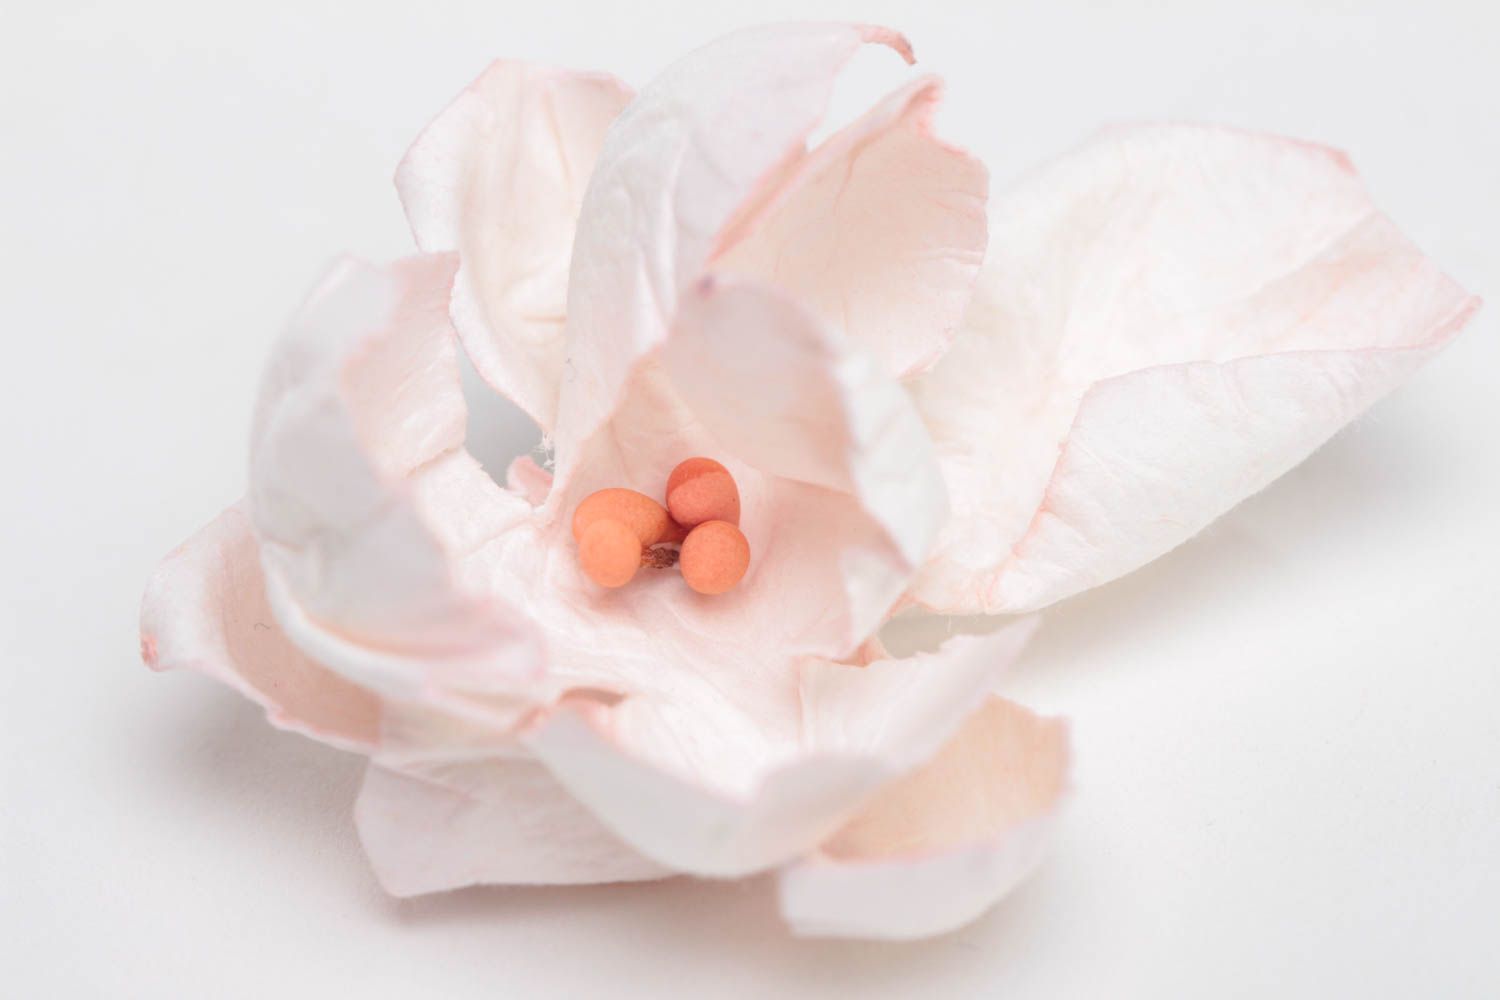 Цветок скрапбукинг небольшой розовый нежный красивый для творчества хэнд мейд фото 2